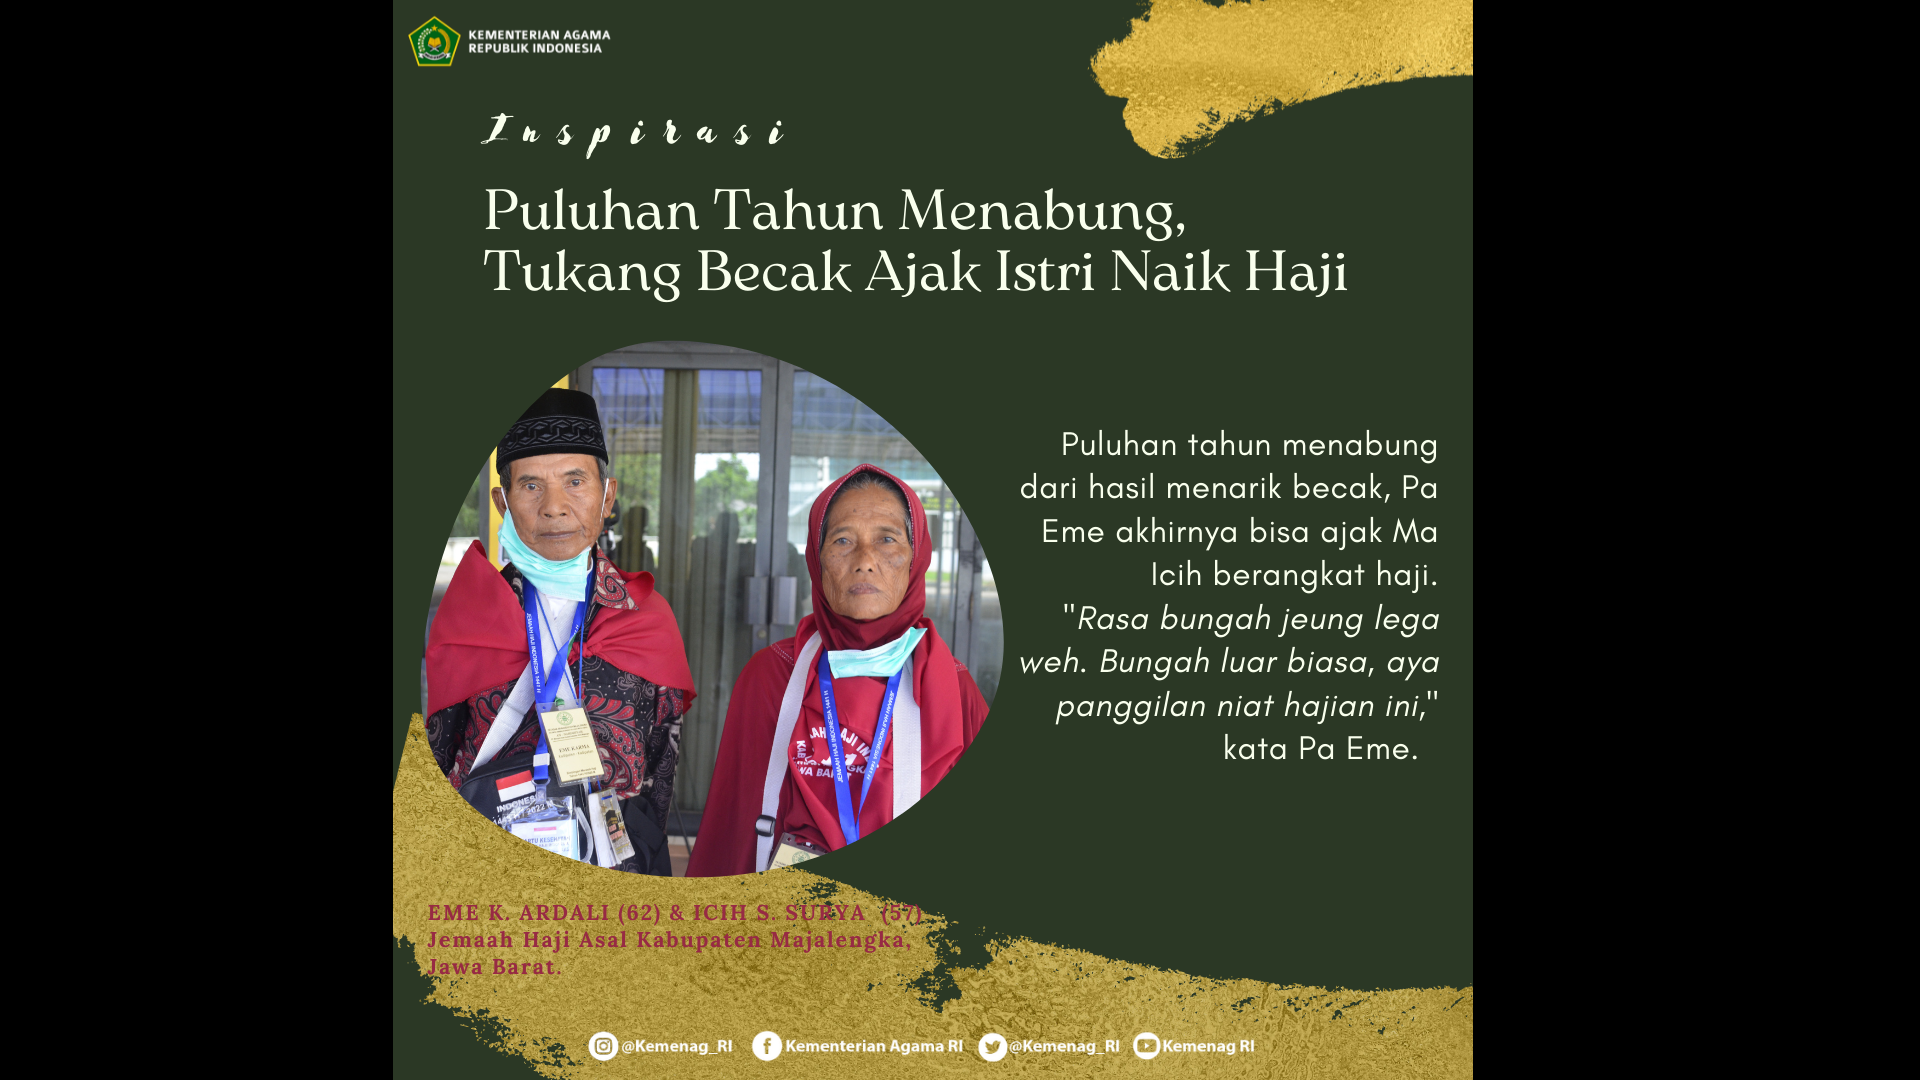 Eme K. Ardali (62) dan Icih Salsih Surya (57), jemaah haji asal Kab. Majalengka, Jawa Barat.